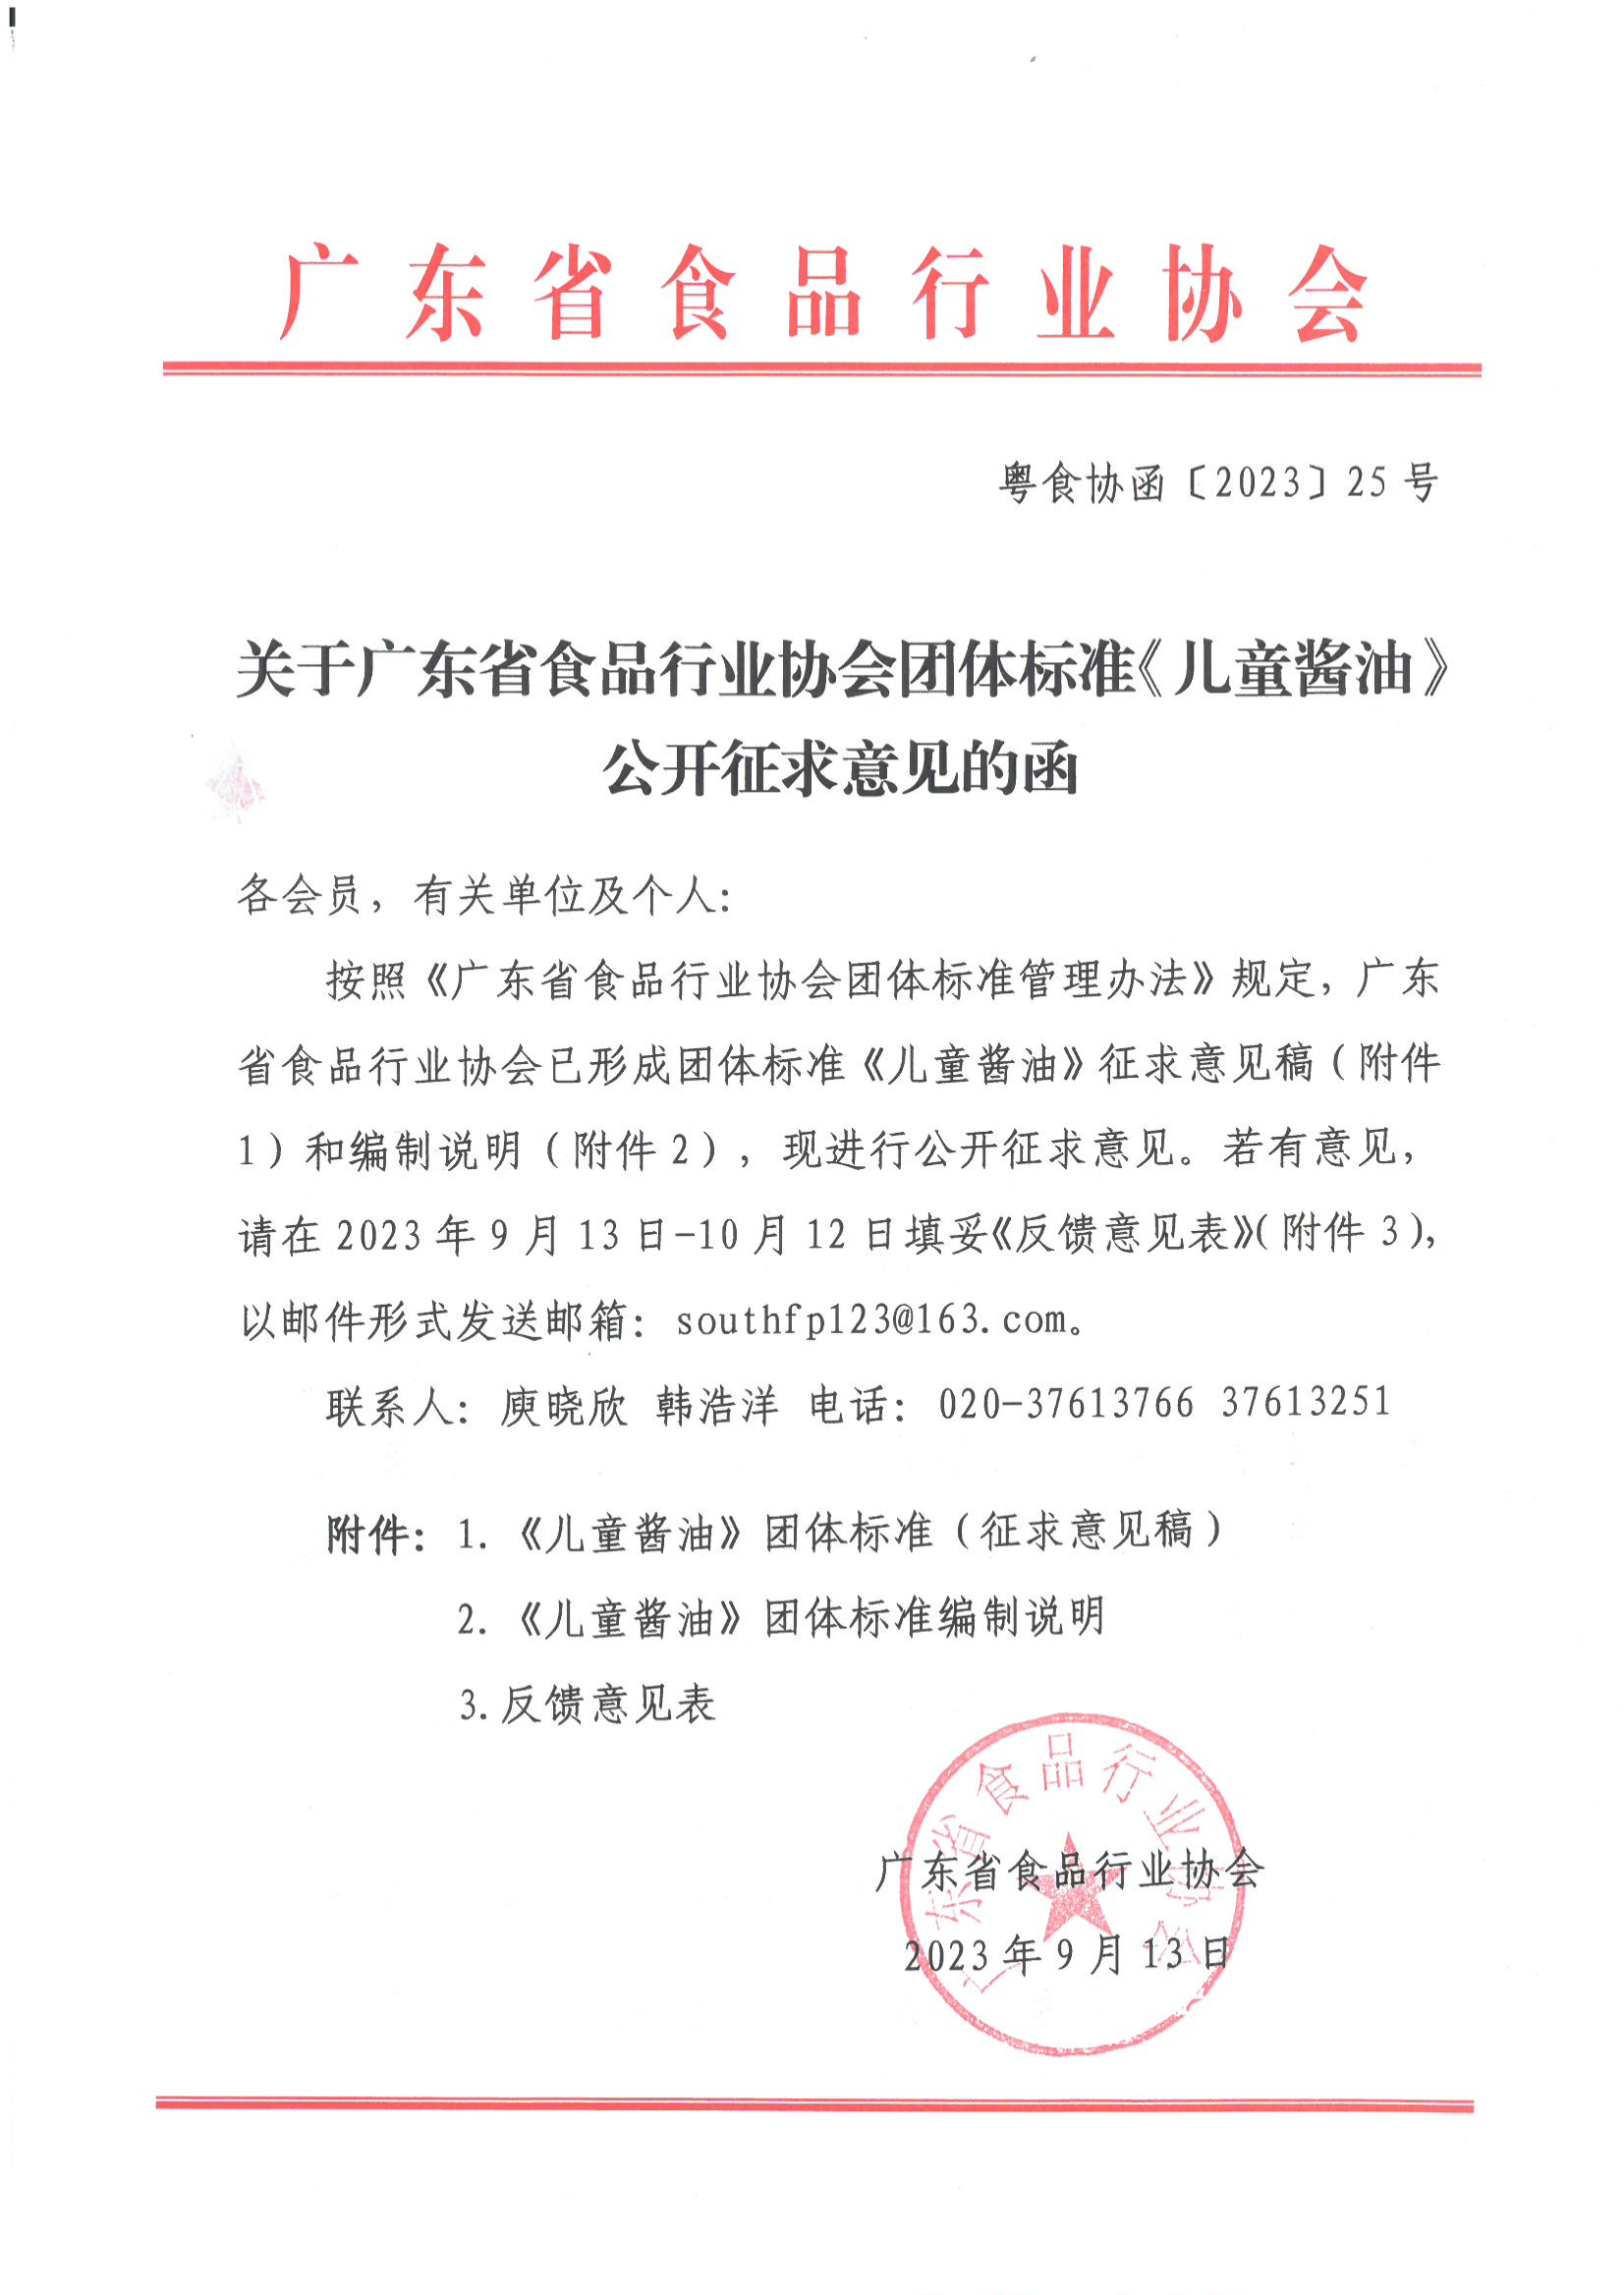 关于广东省食品行业协会团体标准《儿童酱油》公开征求意见的函